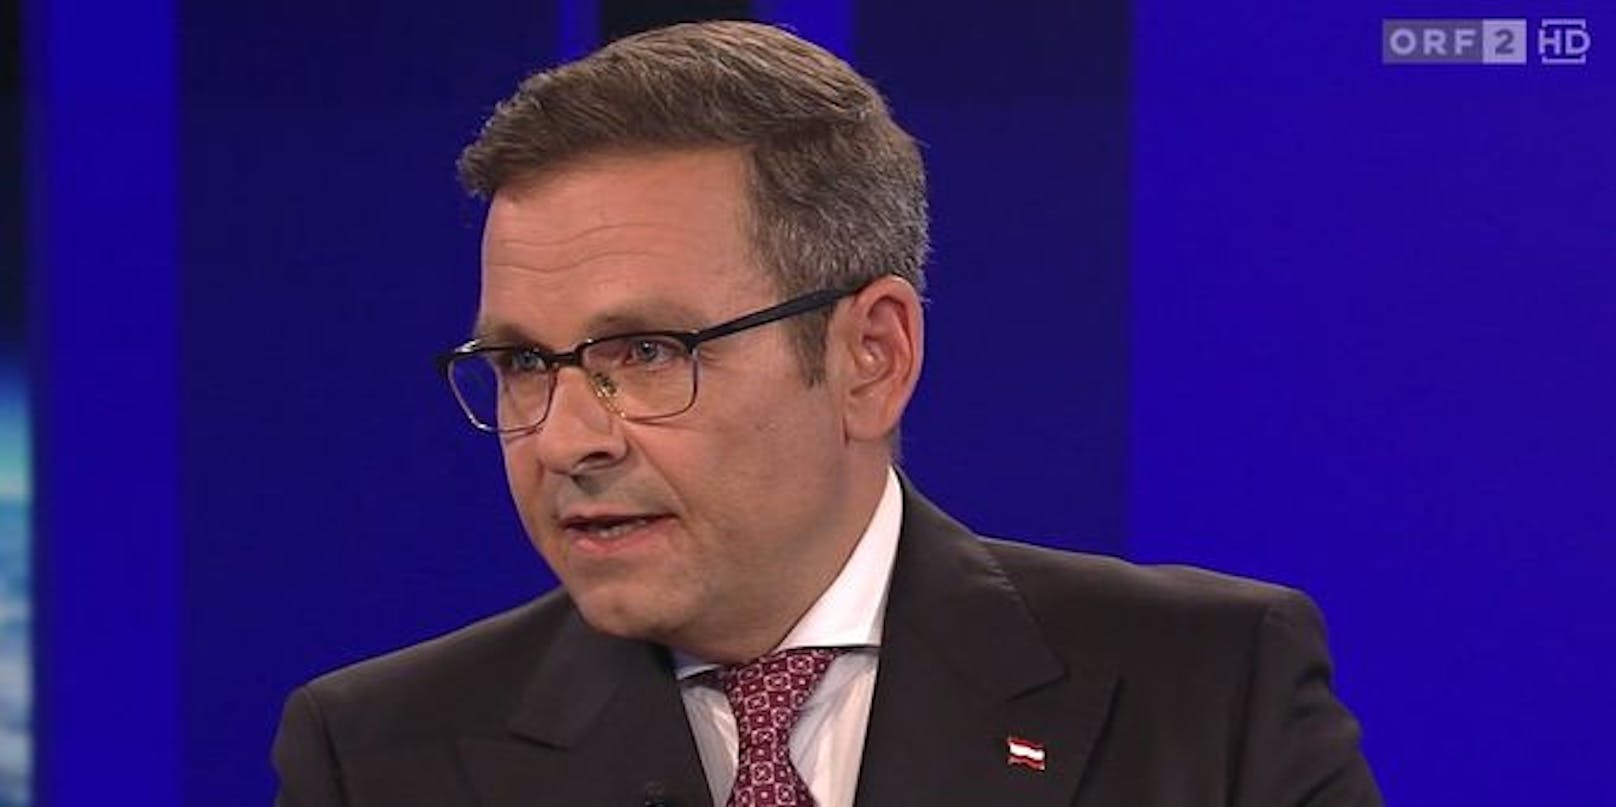 Abngriffslustig, auch auf Moderator und ORF, zeigte sich Hofburg-Kandidat Gerald Grosz in der "ZIB2".